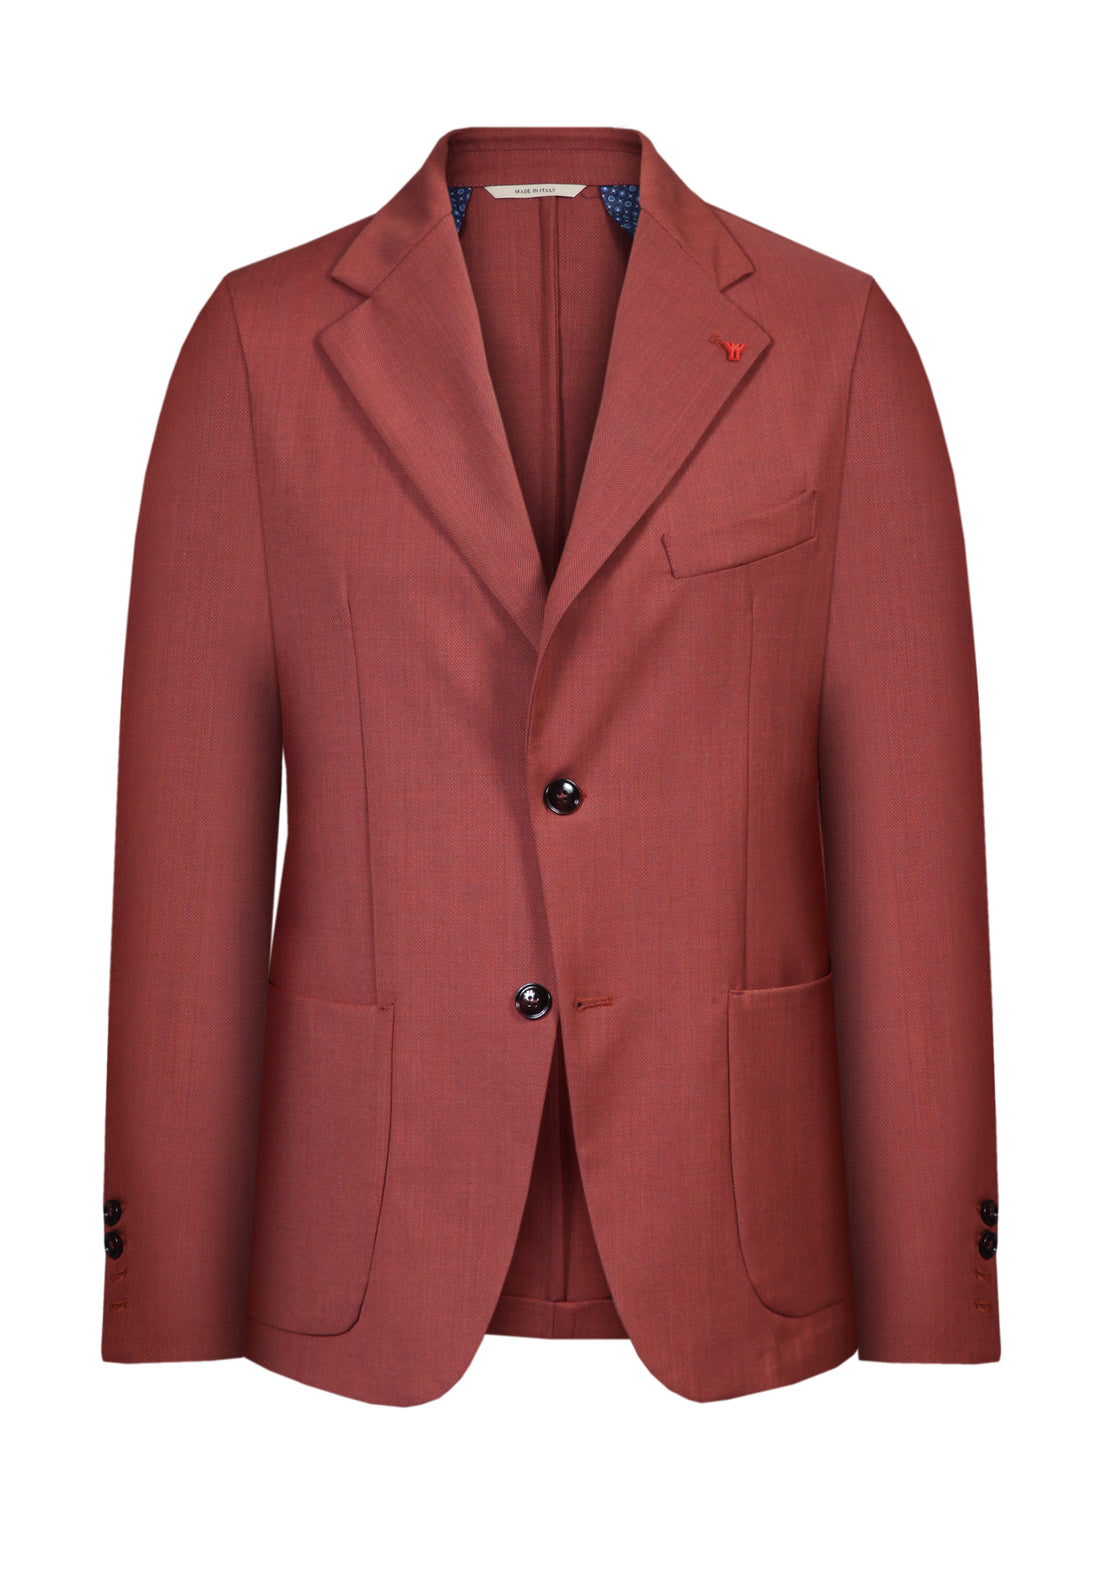 Two-button jacket in herringbone fabric - Coccio